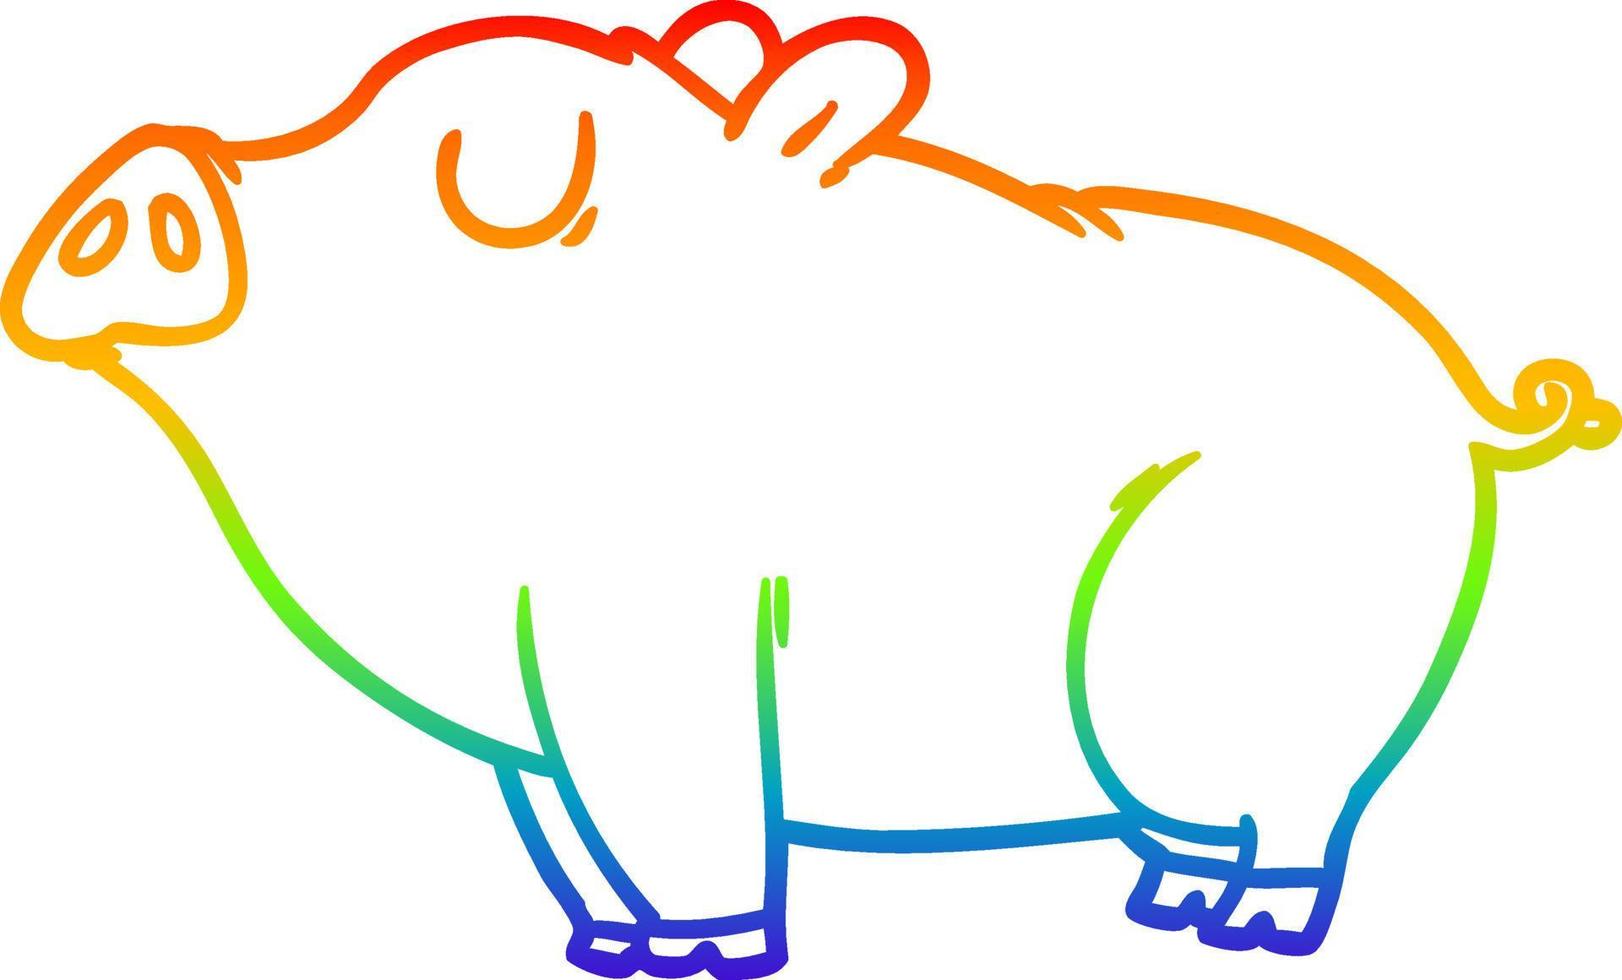 Regenbogen-Gradientenlinie Zeichnung Cartoon-Schwein vektor